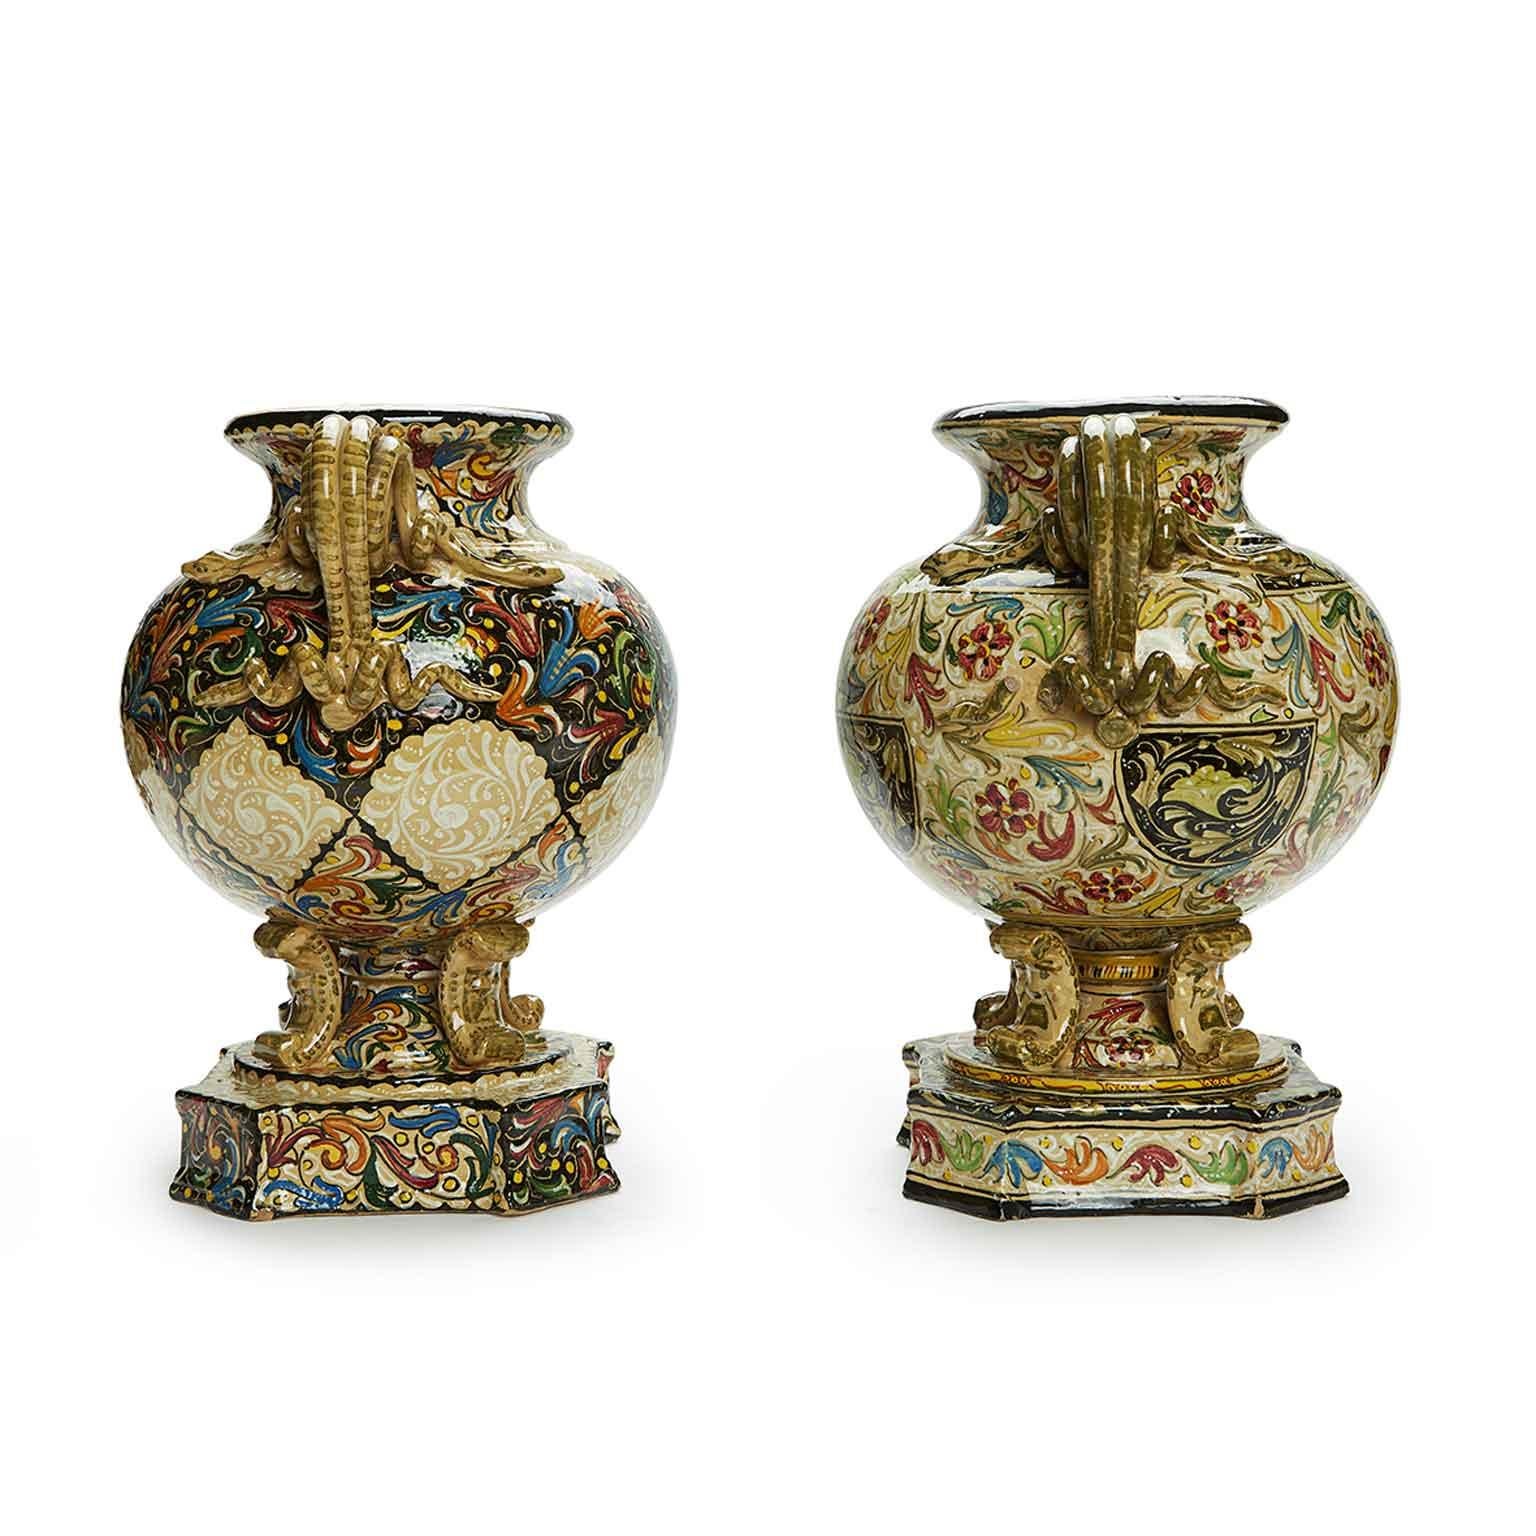 Dall'Italia, una splendida coppia di vasi dipinti a mano con manici a forma di serpenti arrorolati, della manifattura Ceramica Molaroni di Pesaro, del 1950 circa, due anfore biansate dalla fattura eclettica, di forma circolare,  poggianti su di un